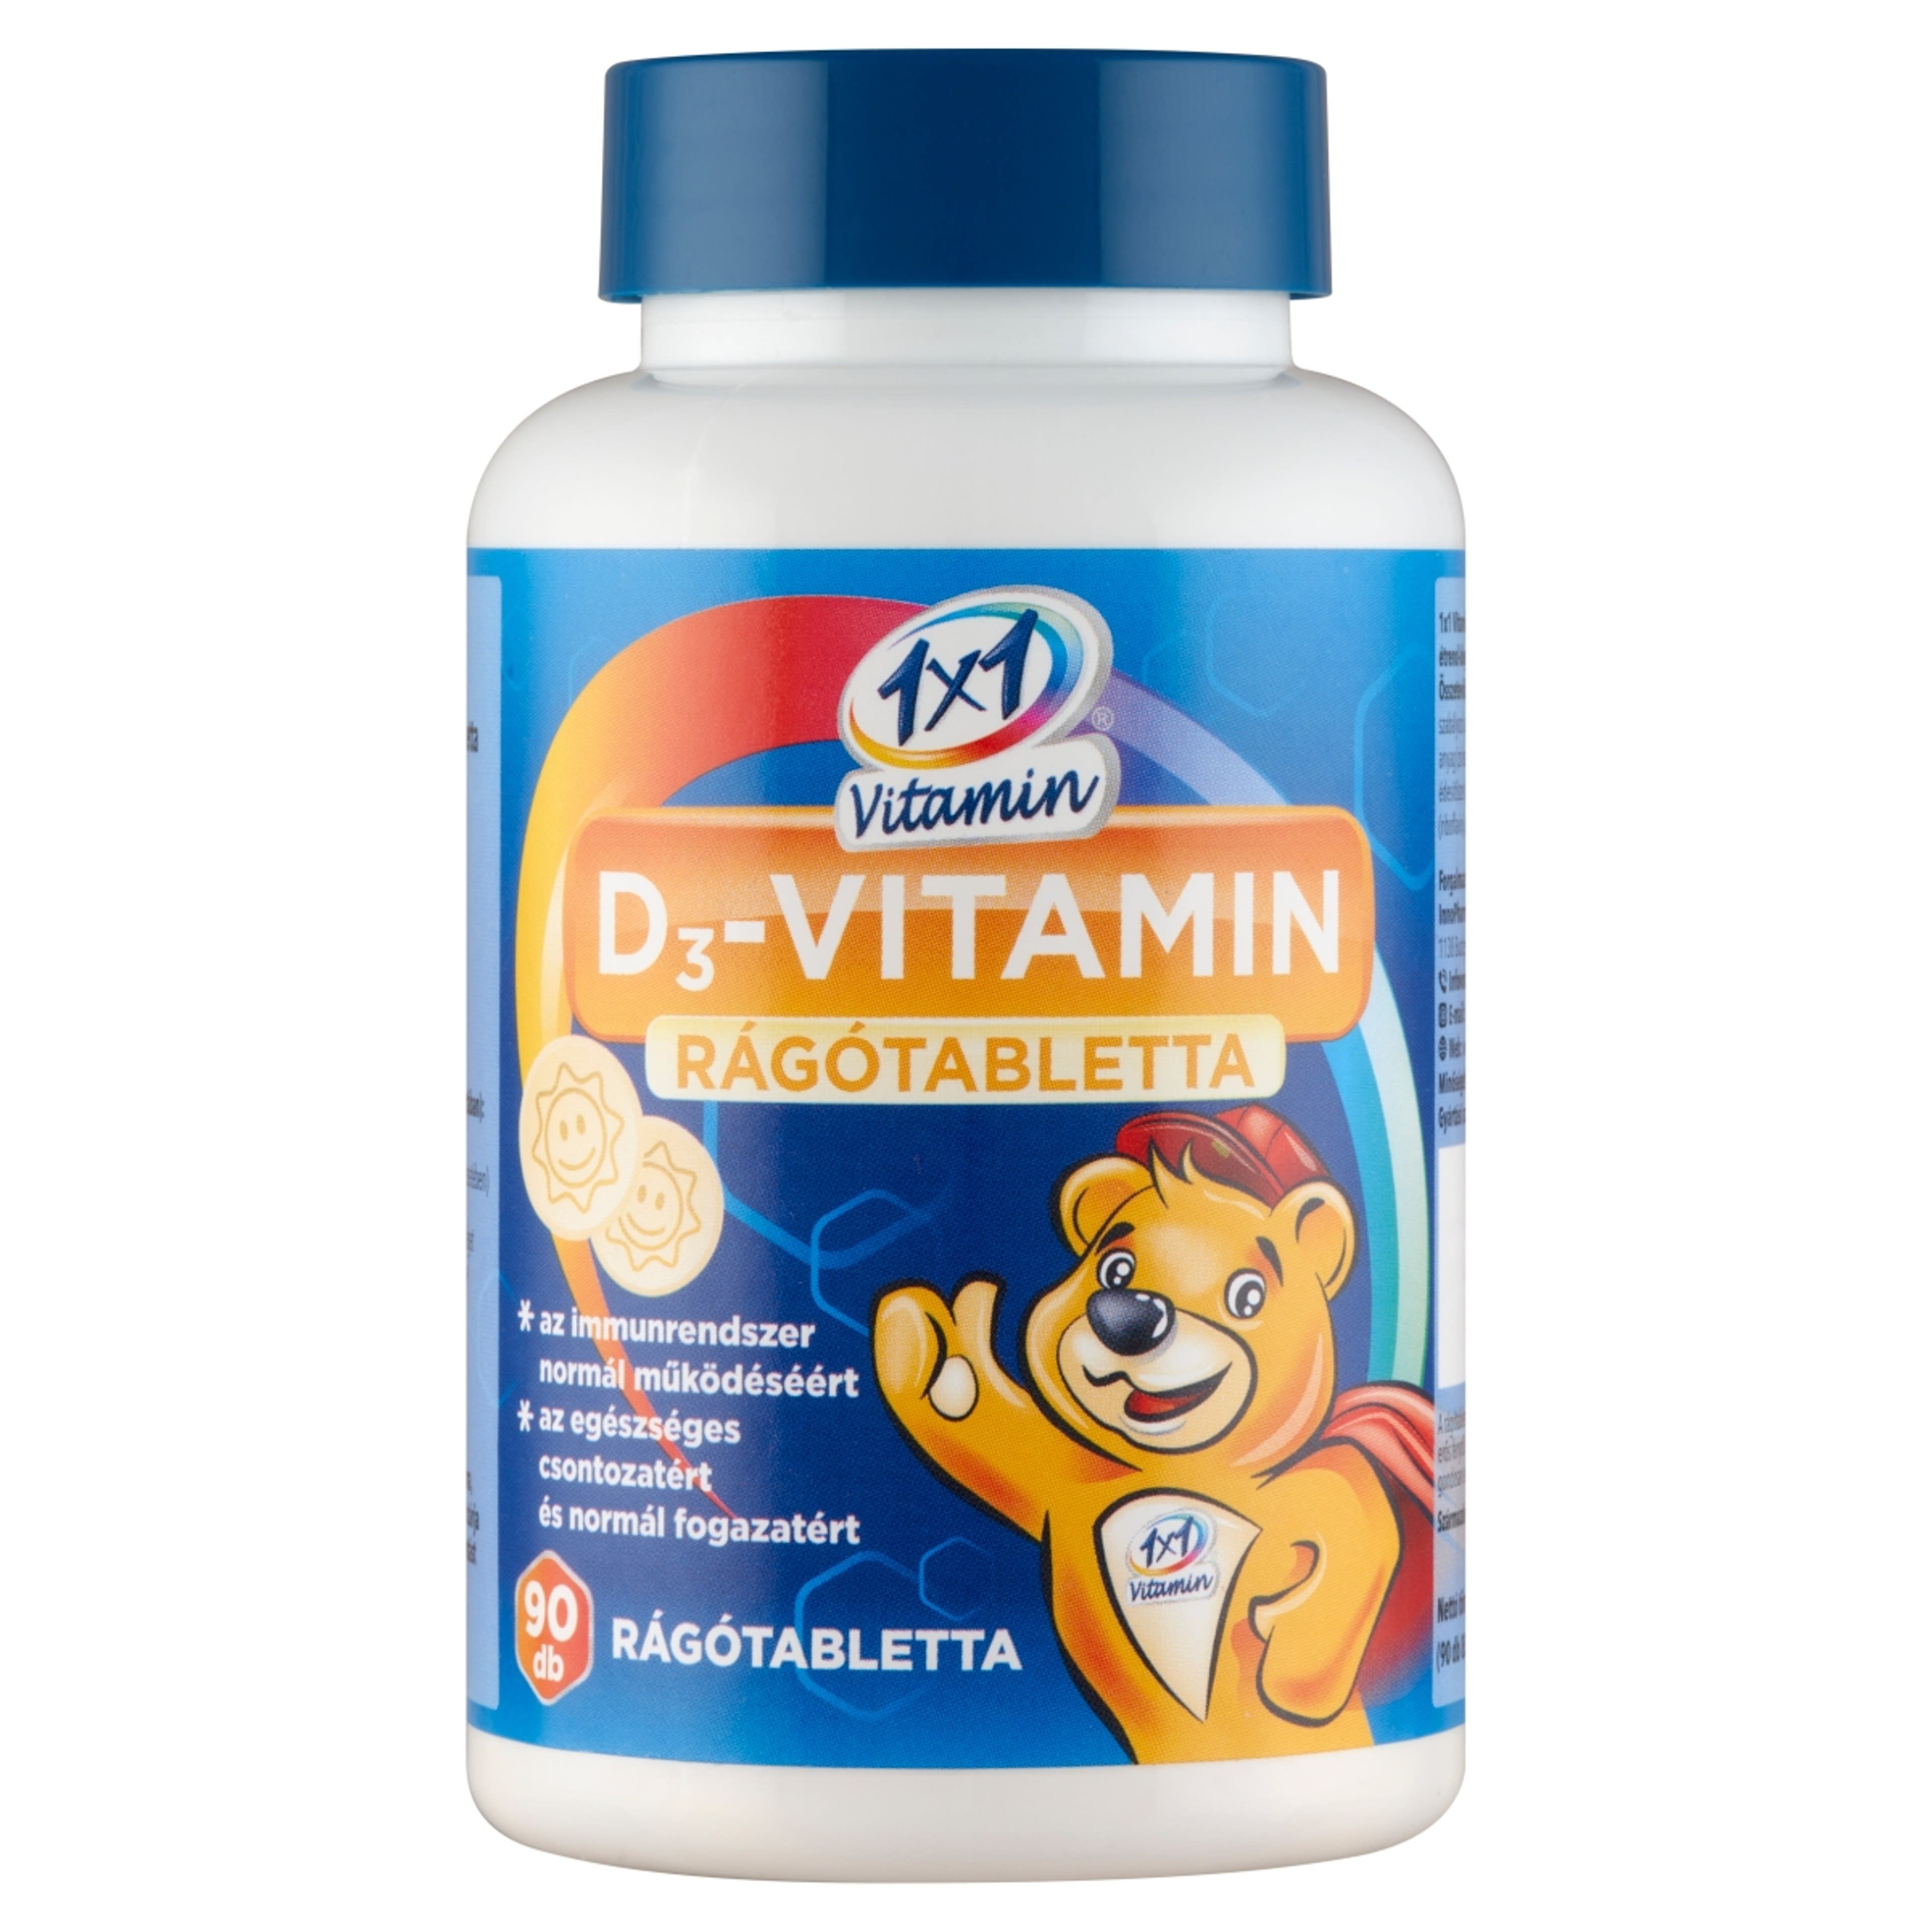 1x1 Vitamin D3-vitamin rágótabletta napocskás - 90 db